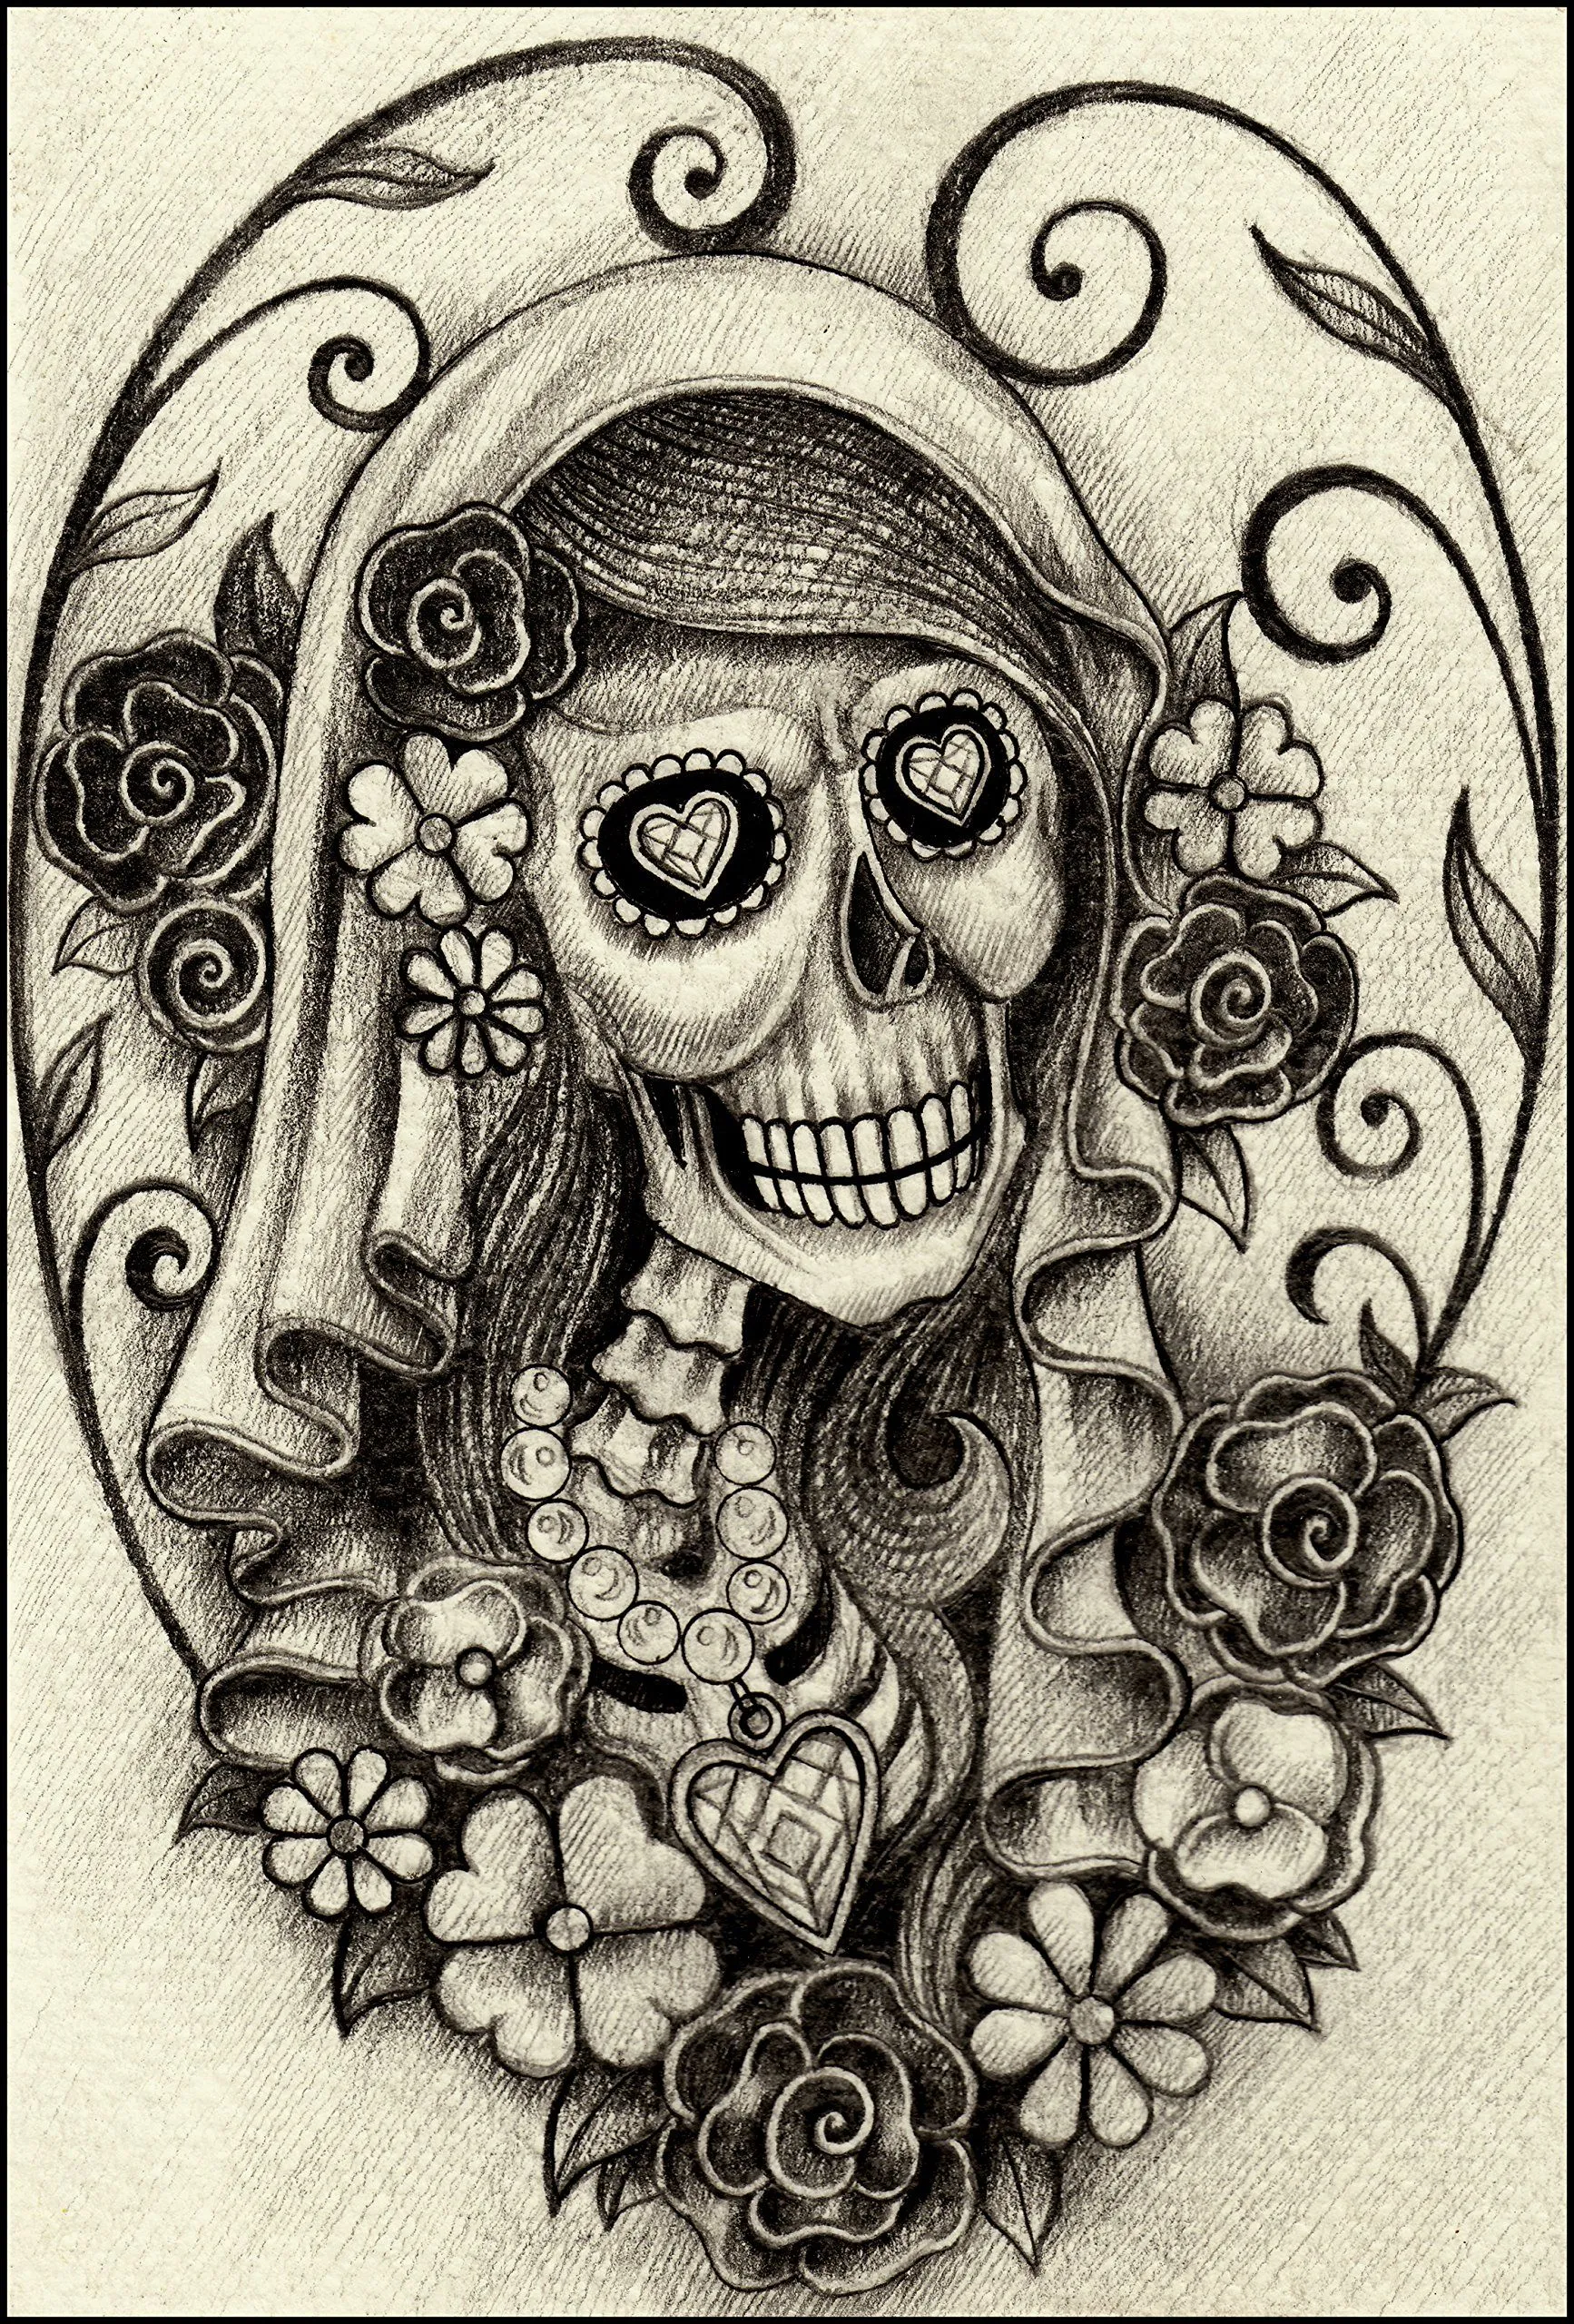 Amazon.com: Dibujo a lápiz Mujer Esqueleto con joyas y flores Retrato # 2  vinilo calcomanía : Automotriz